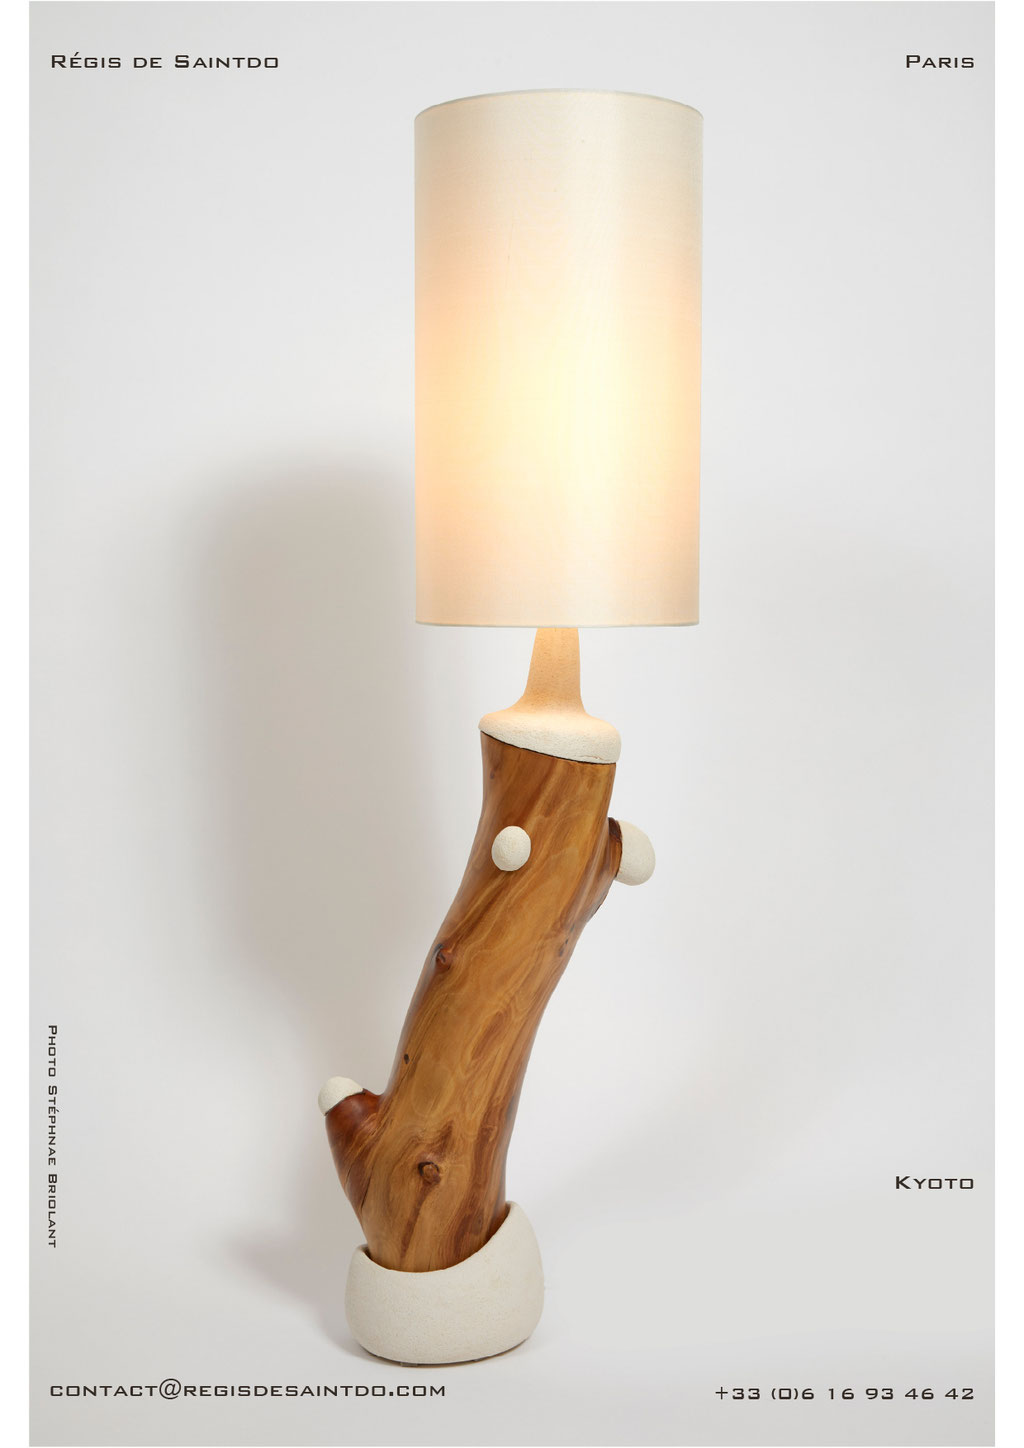 Lampe Kyoto bois de cerisier et céramique - faite main-unique @Régis de Saintdo